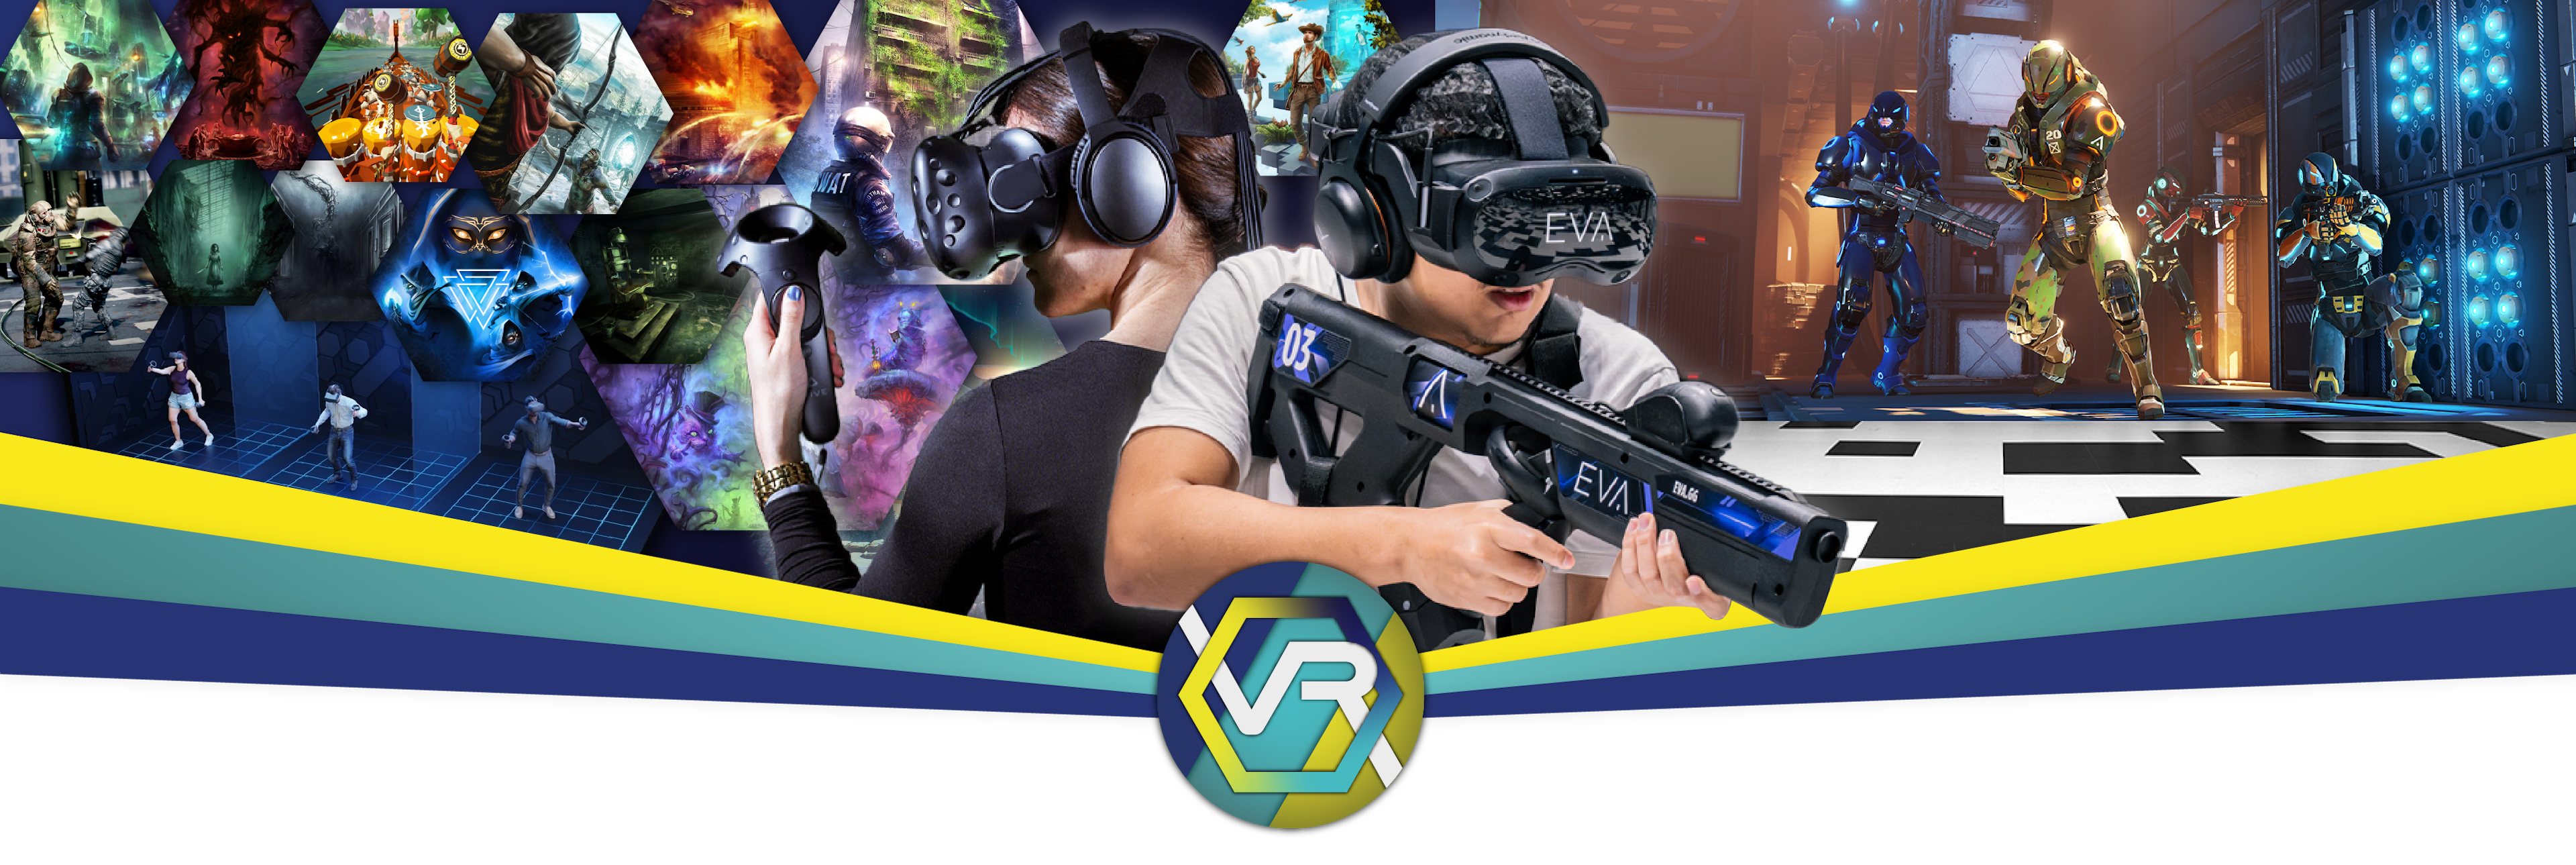 Jeux VR bannière